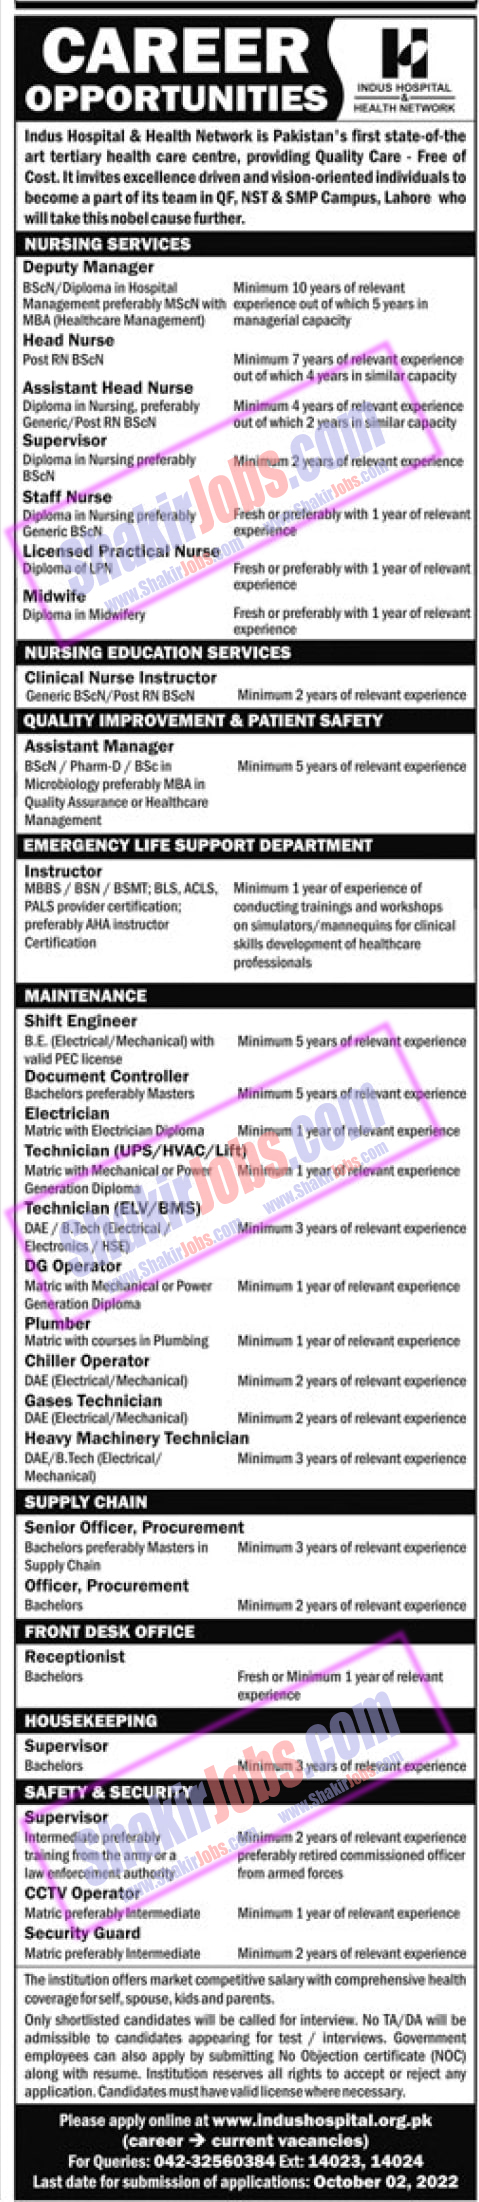 Indus Hospital Jobs 2022